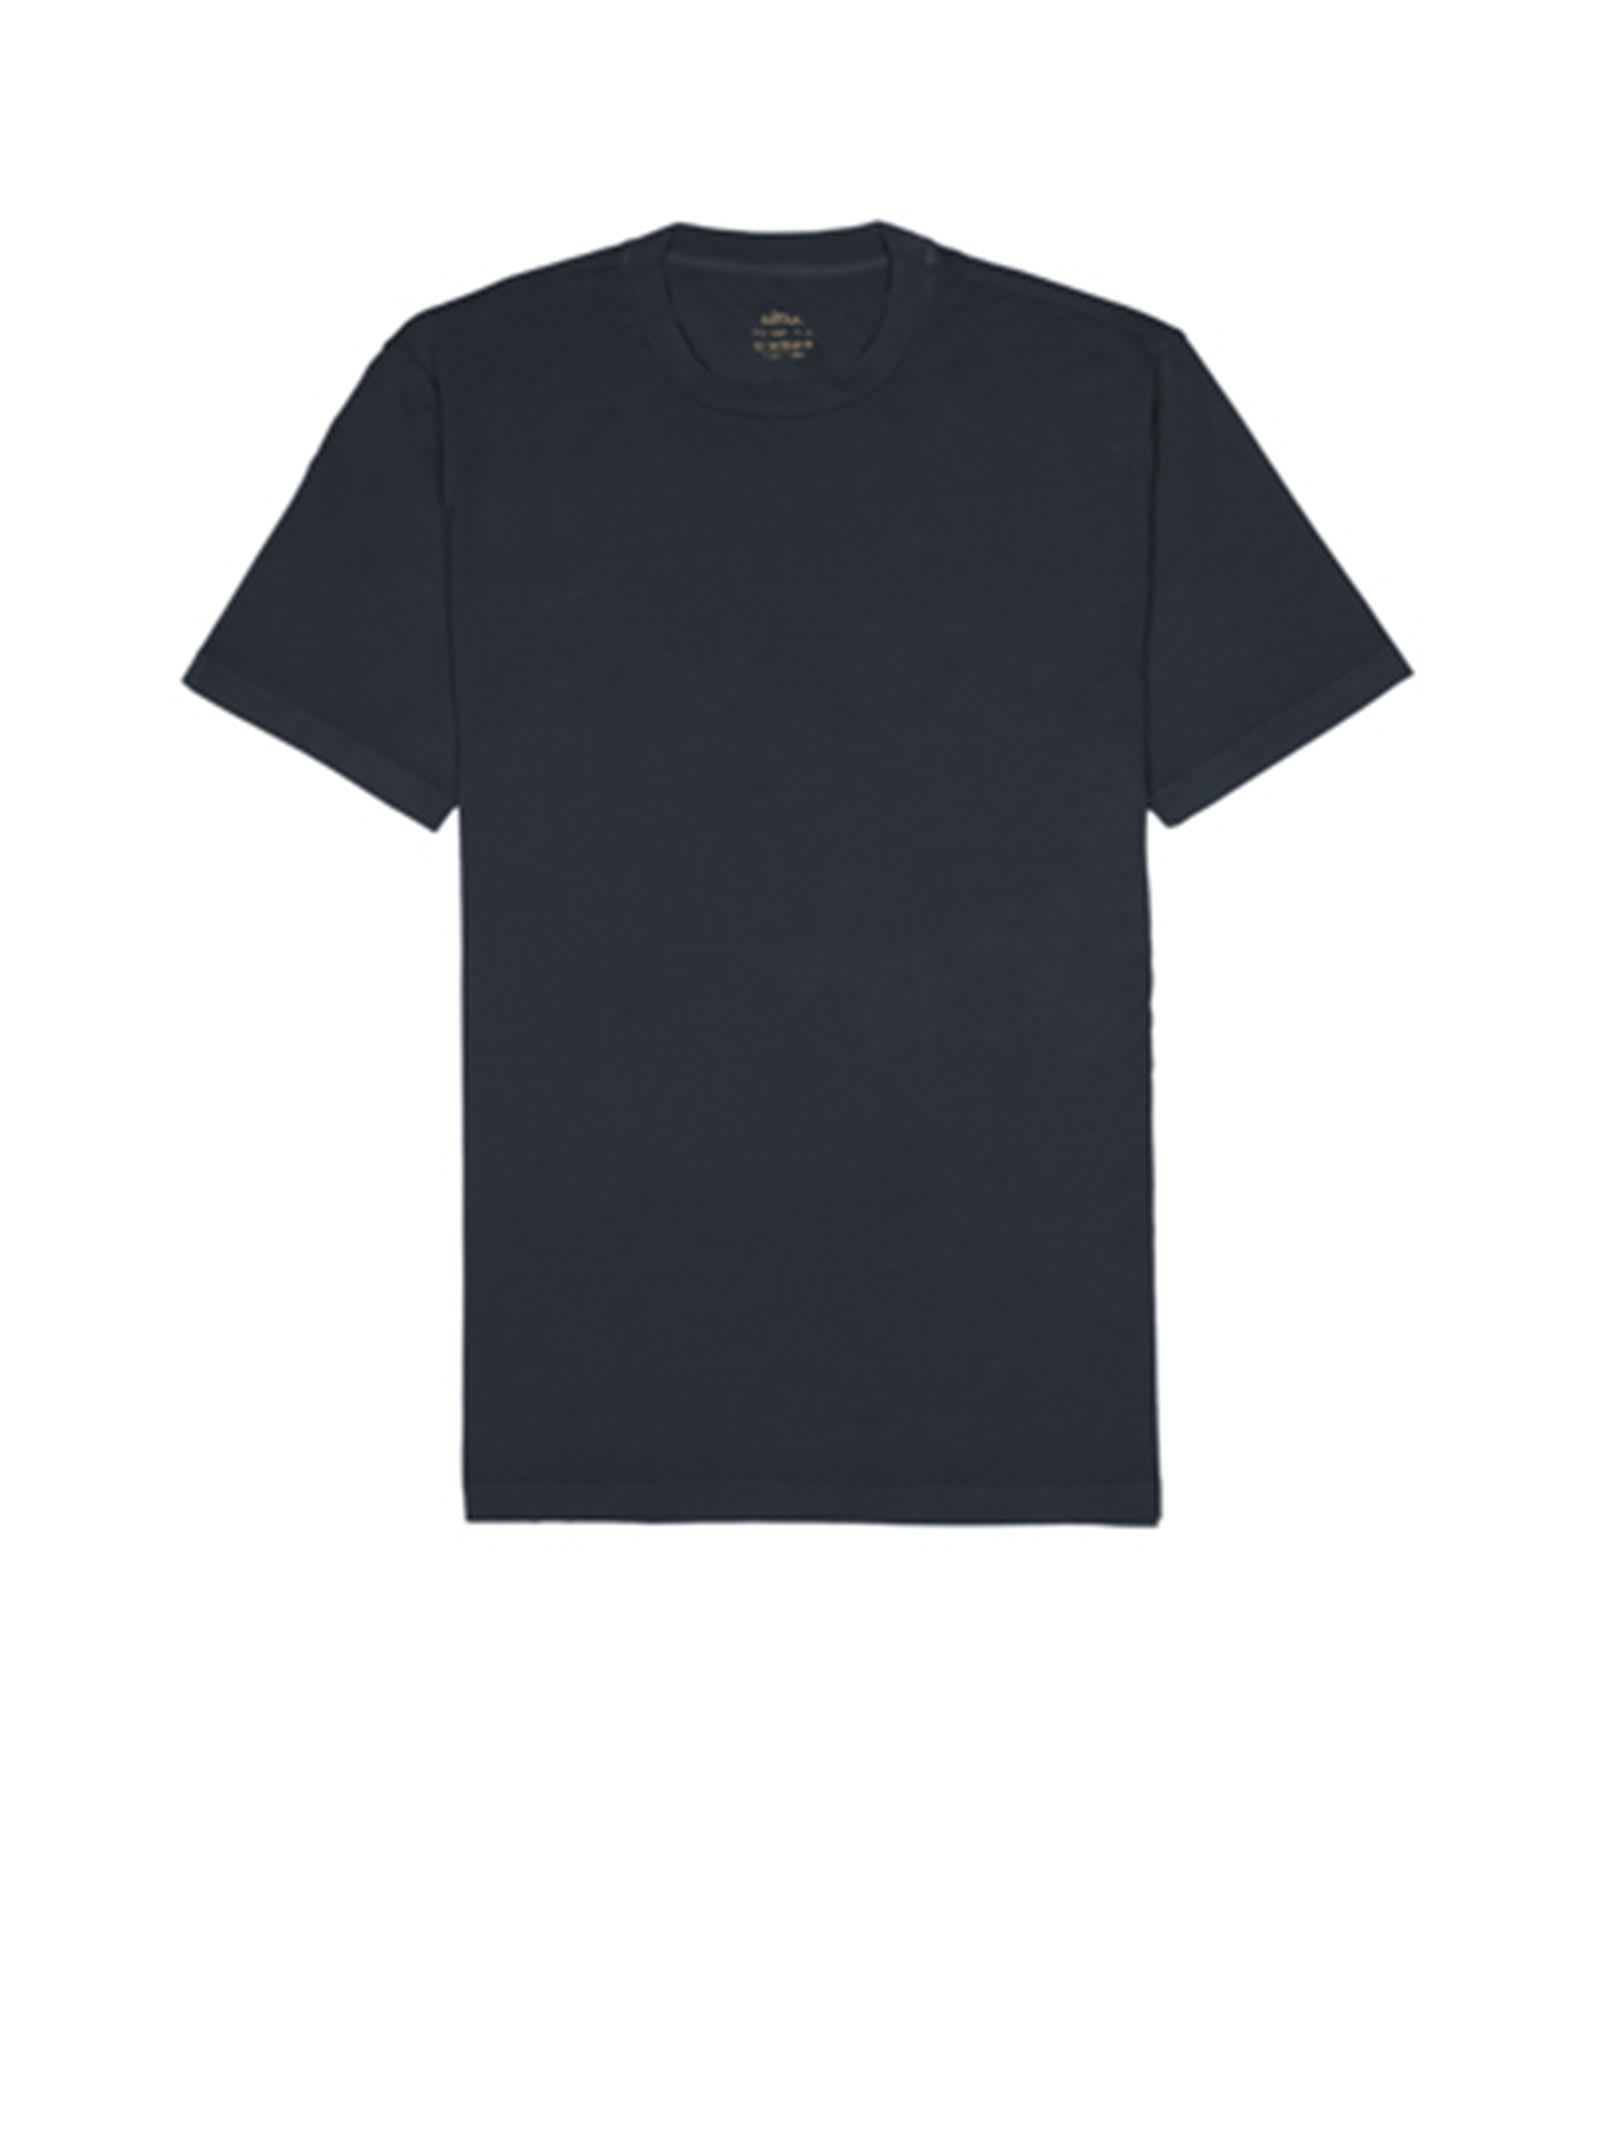 Altea Black Jersey T-shirt